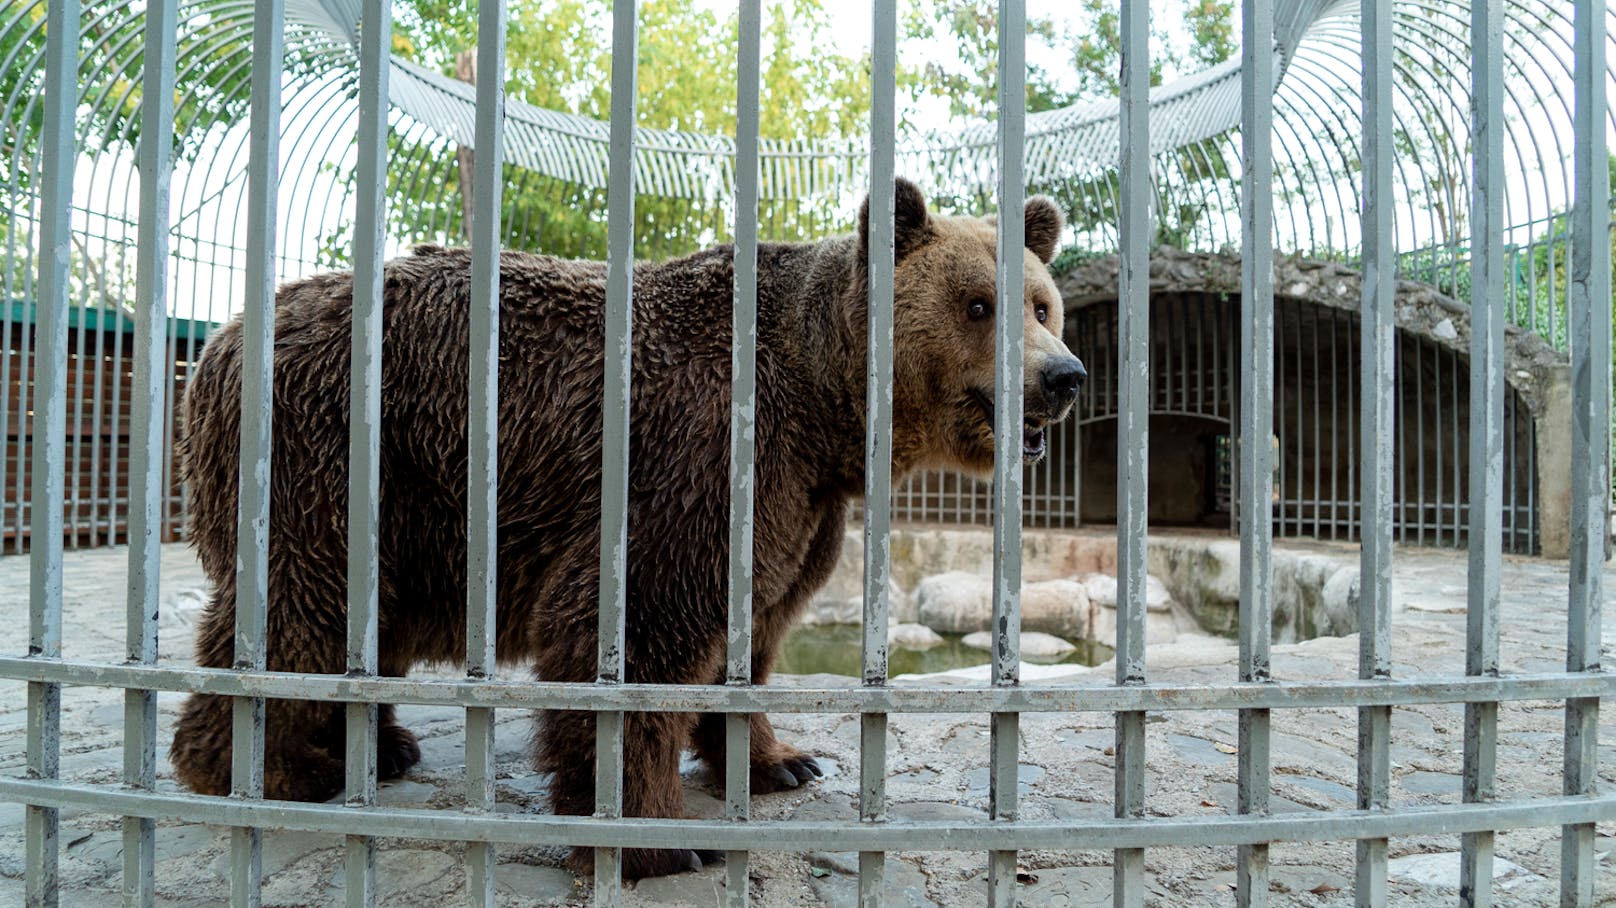 Noch im Jahr 2016 gab es in Albanien über 30 Bären, die in erbärmlichen Verhältnissen bzw. in kleinen Käfigen neben Restaurants oder Hotels leben mussten. Dank VIER PFOTEN und anderen Tierschutzorganisation konnten die meisten von ihnen gerettet und in ausländische Schutzzentren gebracht werden.